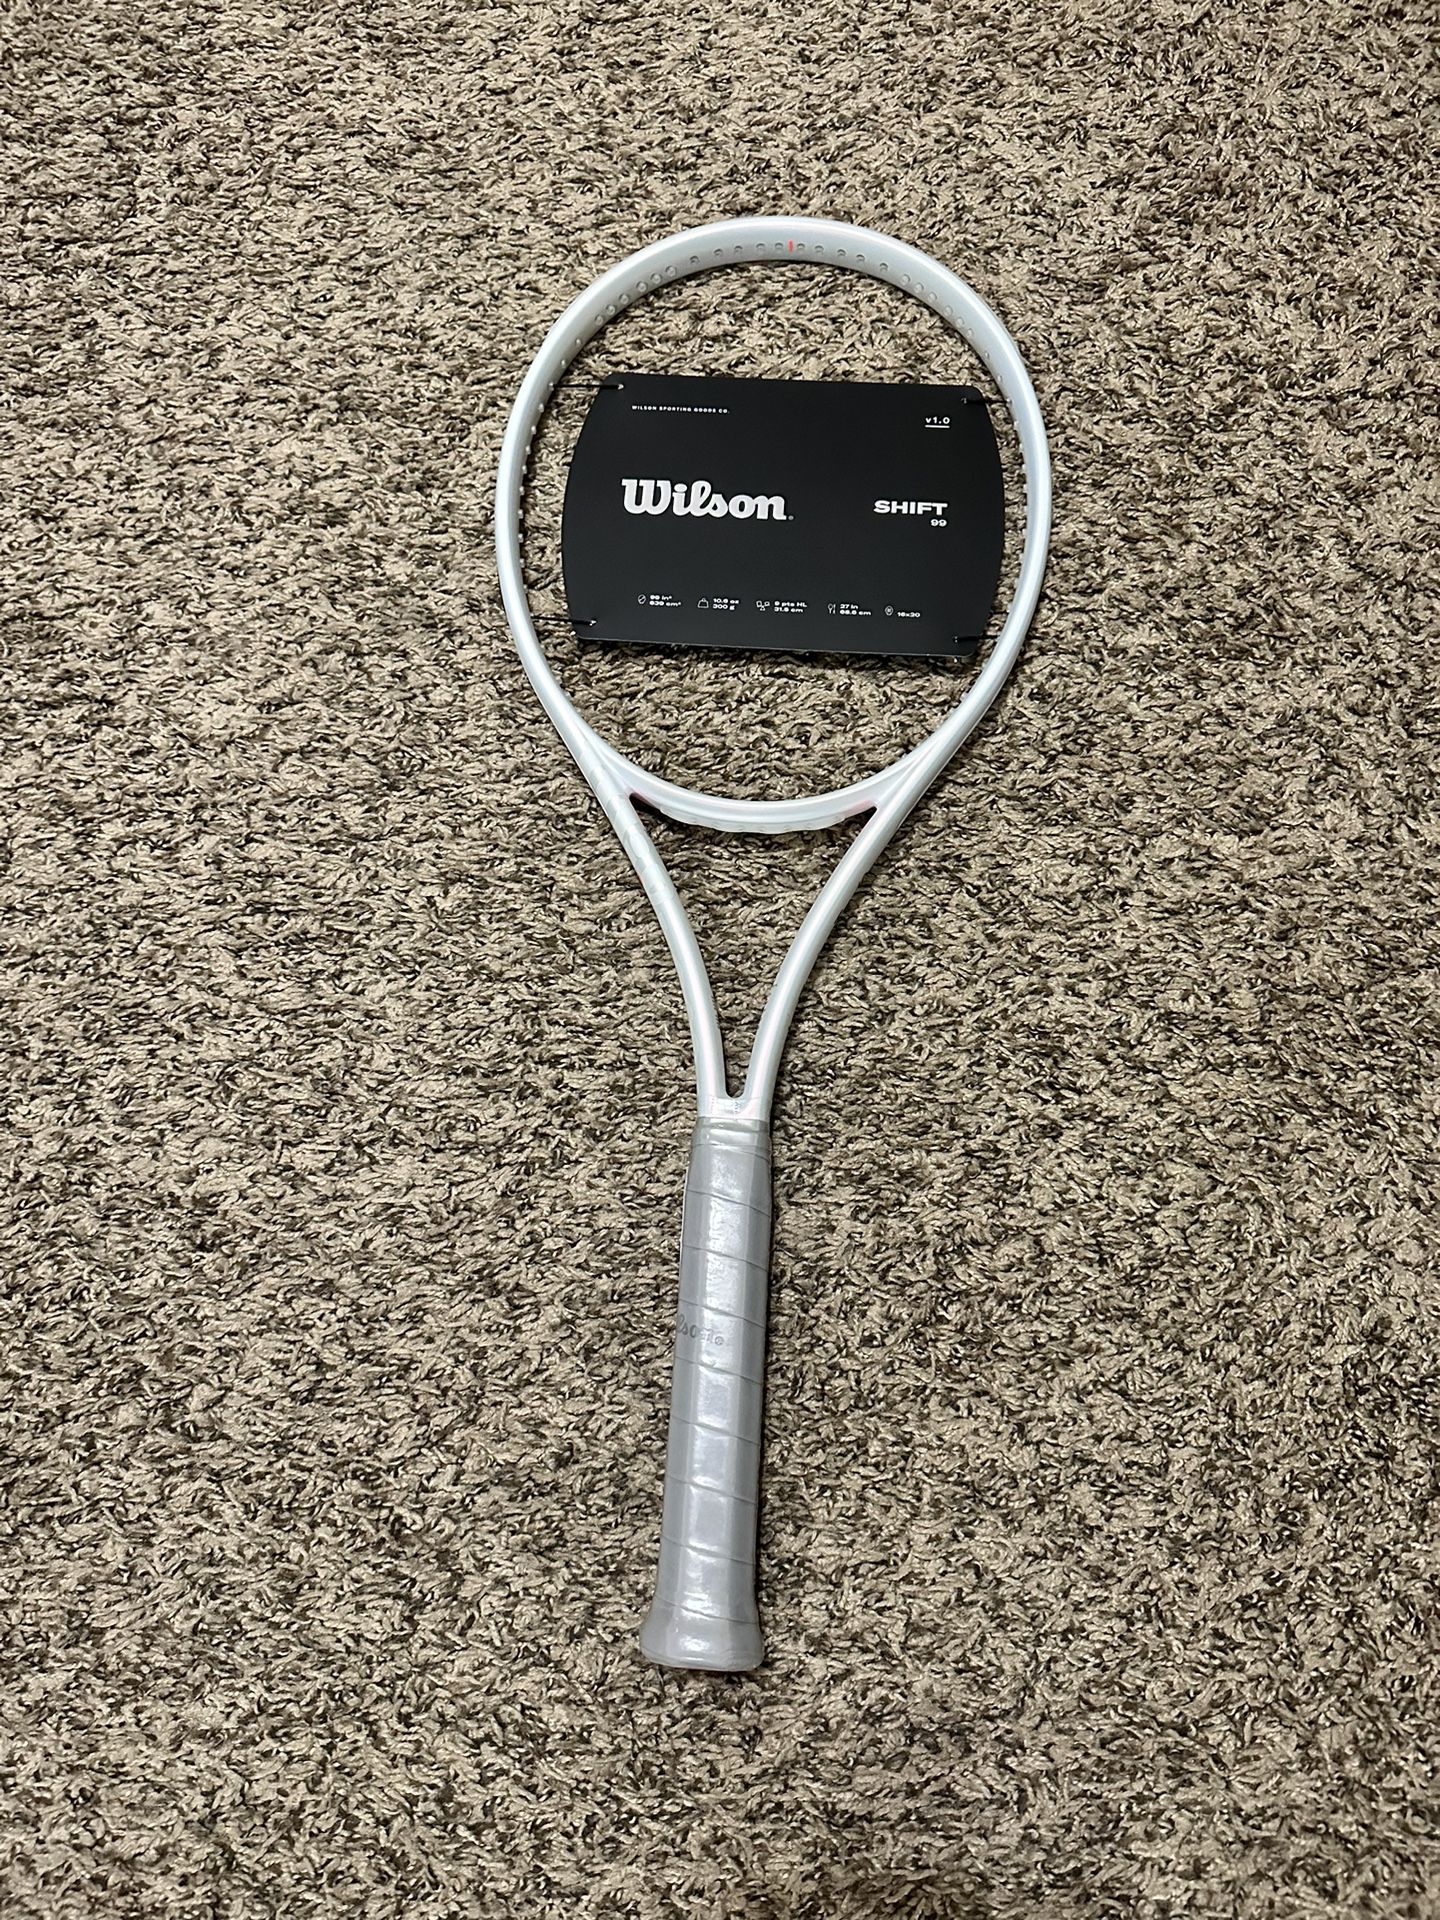 New Wilson Shift Tennis Racquet 